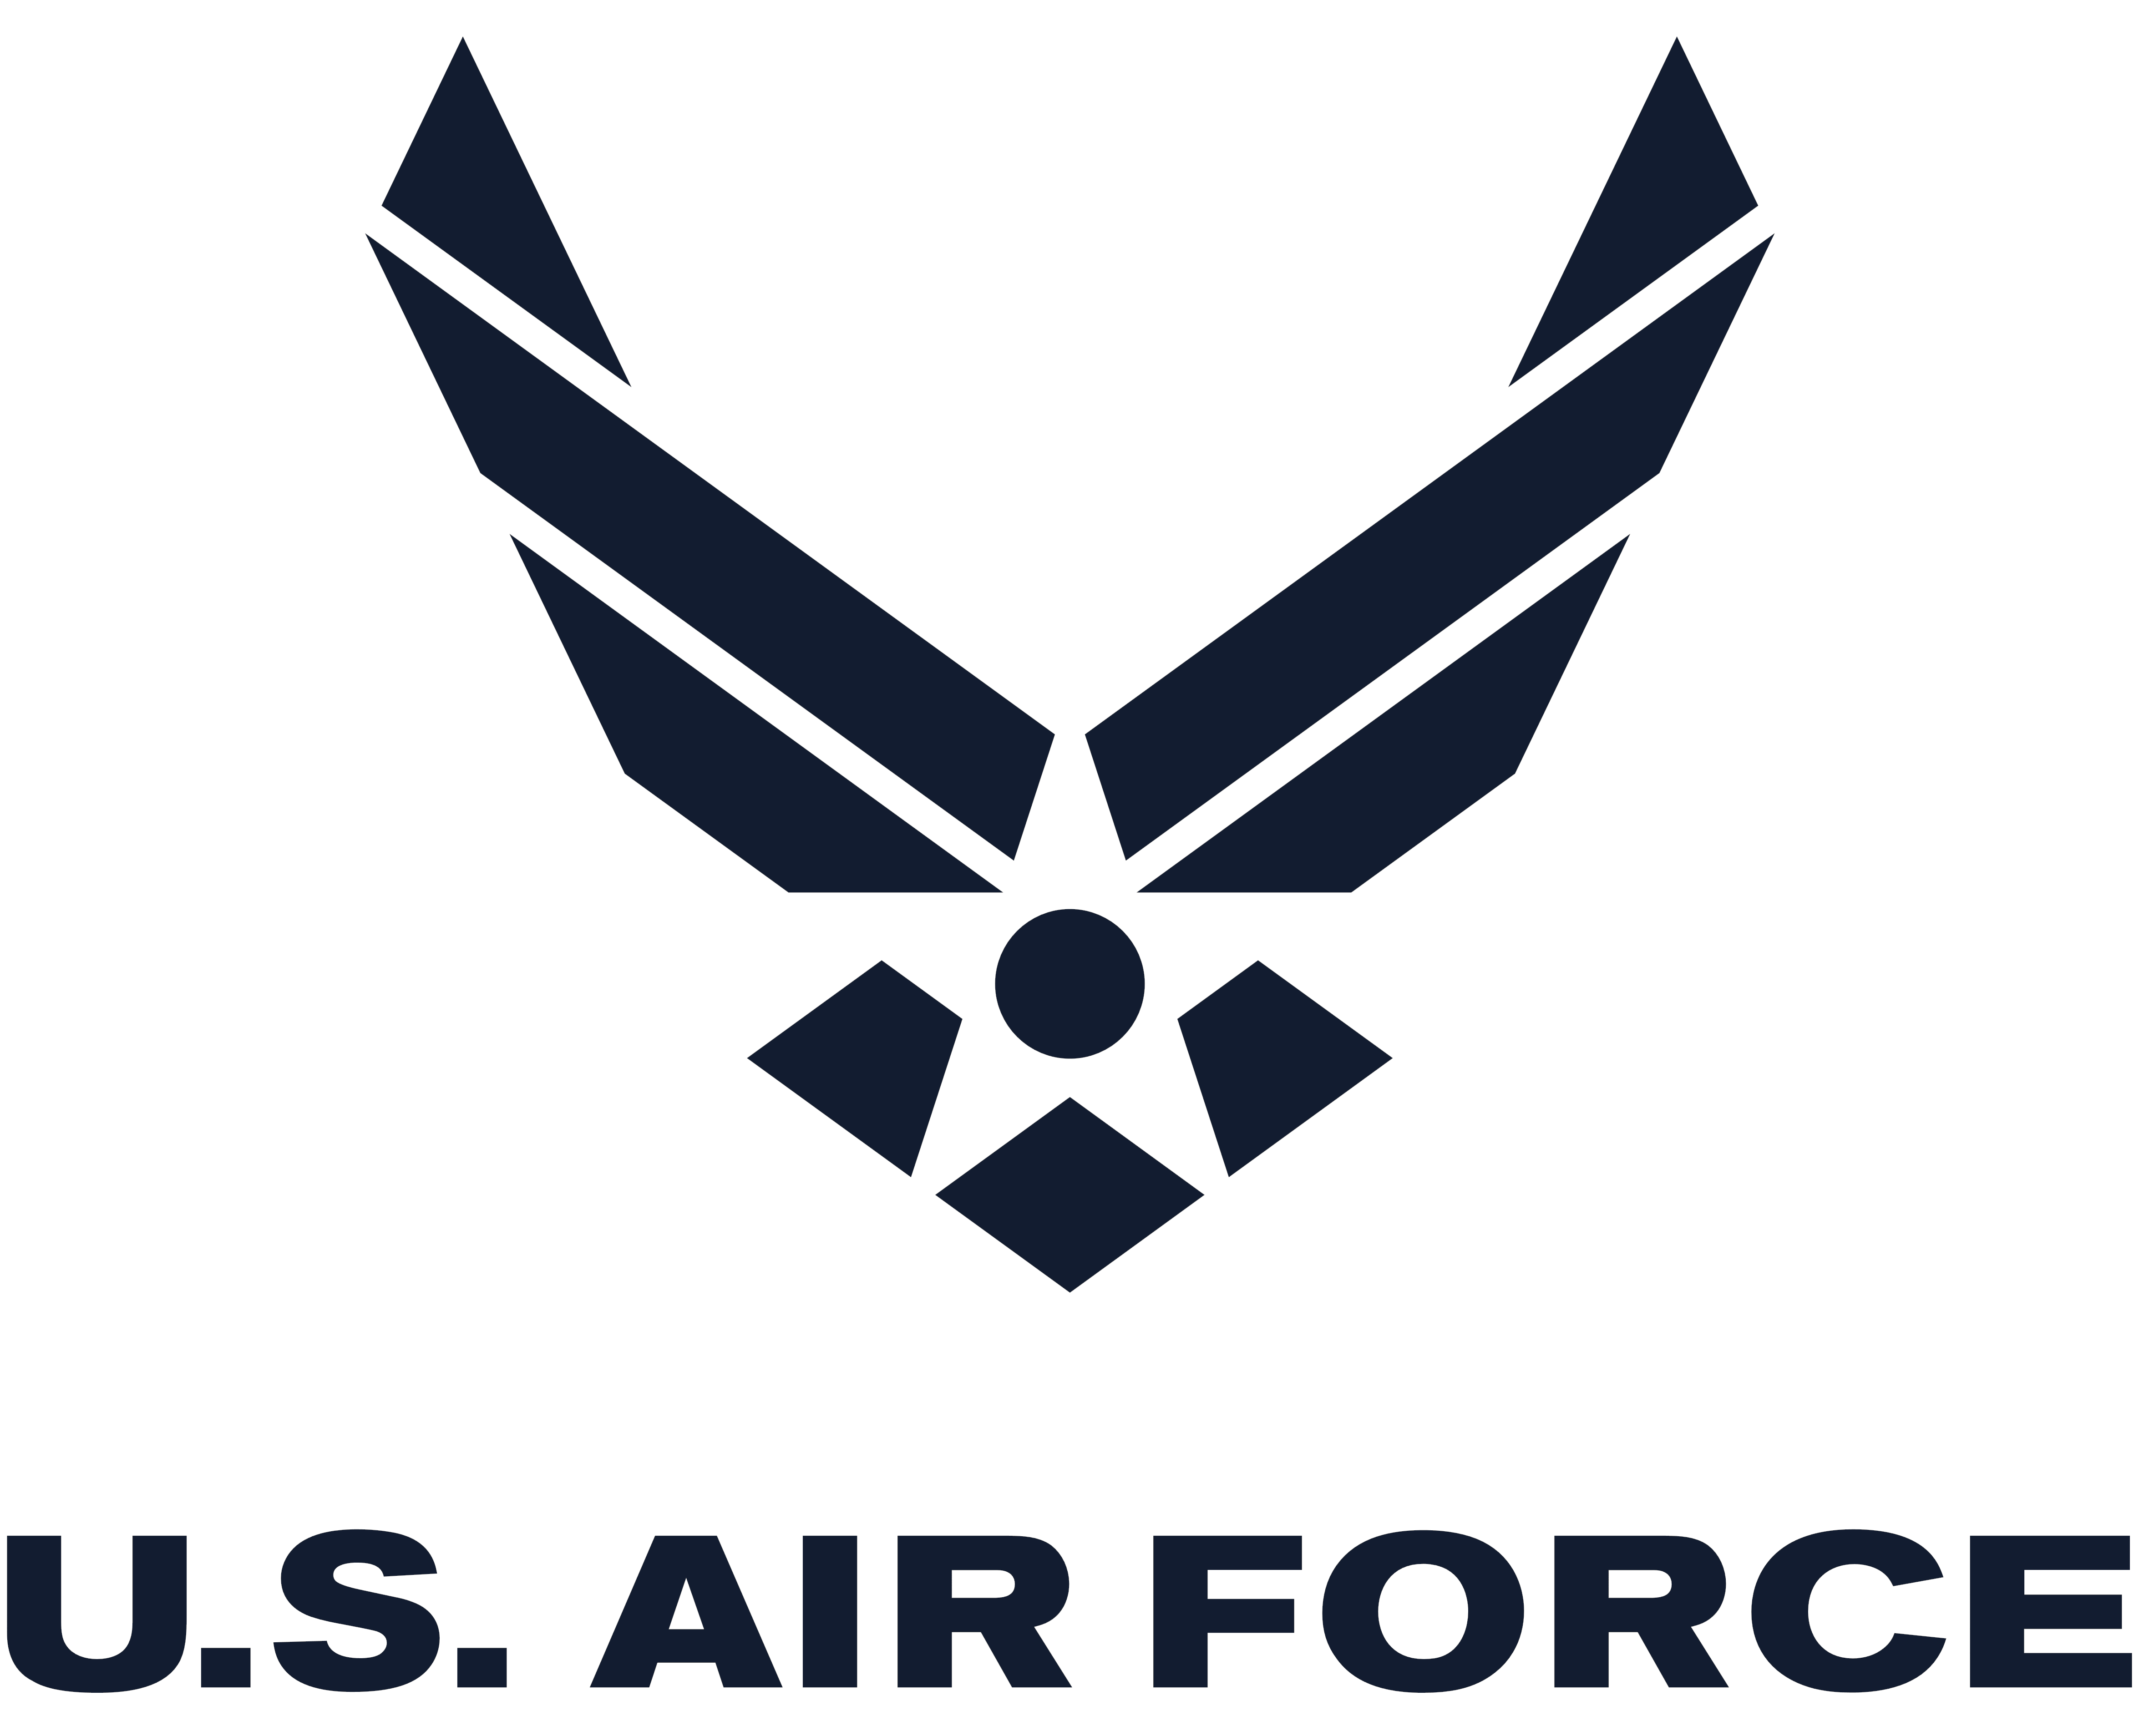 u-s-air-force-logos-download